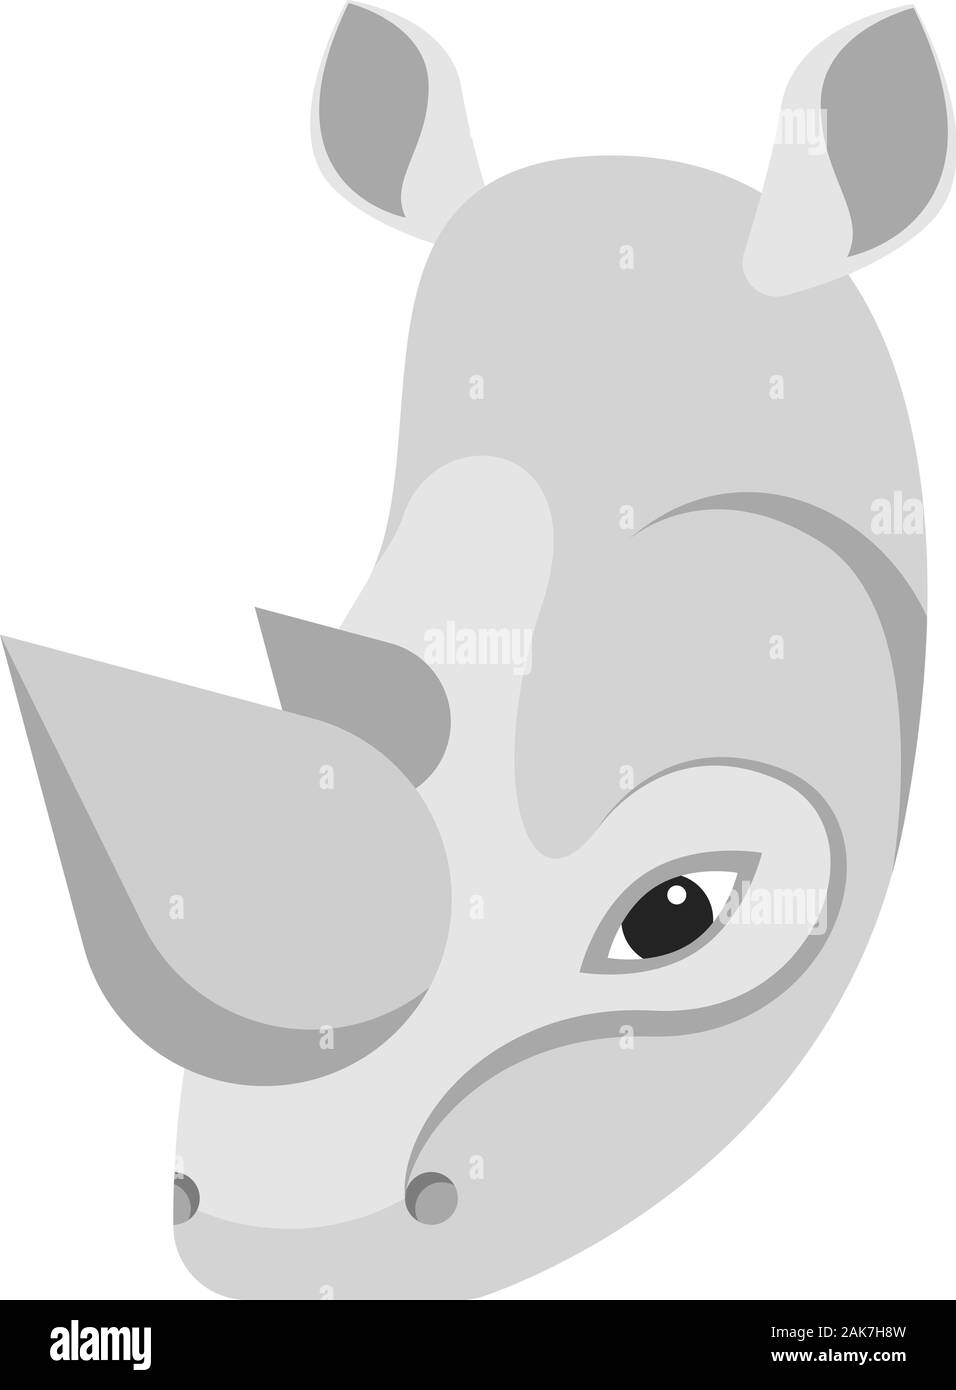 Ritratto di rinoceronte realizzati in un unico semplice stile cartoon. La testa di Rhino. Icona isolato per il design. Illustrazione Vettoriale Illustrazione Vettoriale